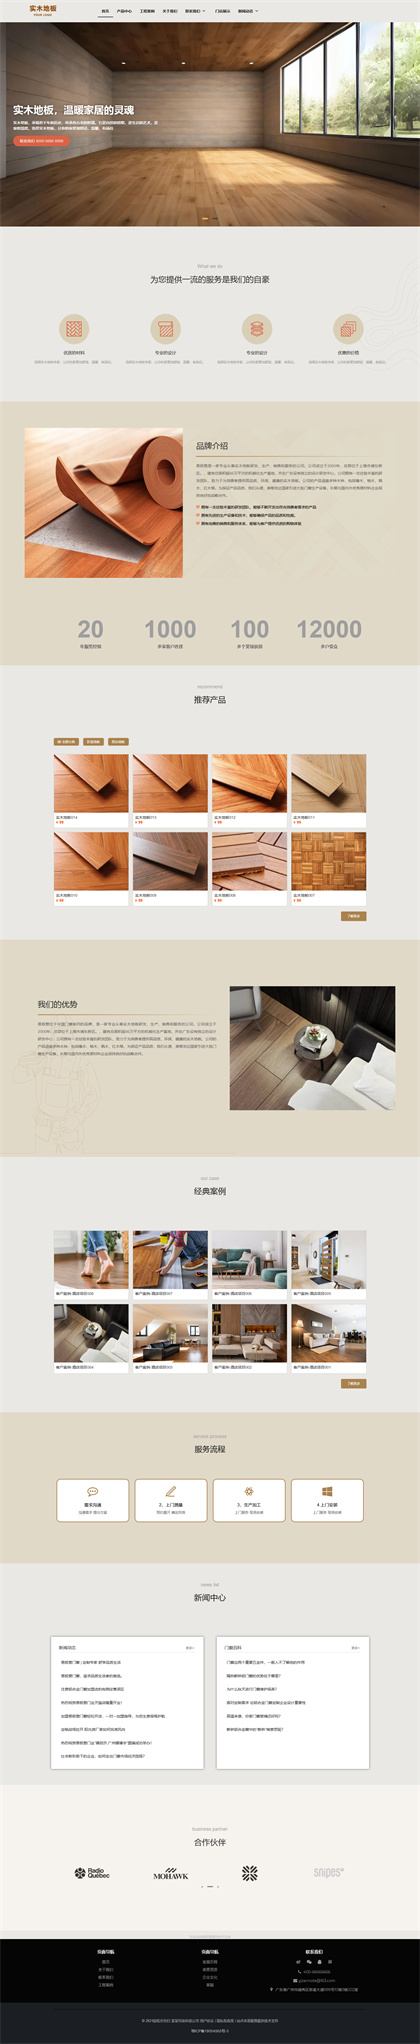 地板瓷砖-实木地板-装修公司-建材公司-网站模板网站模板图片